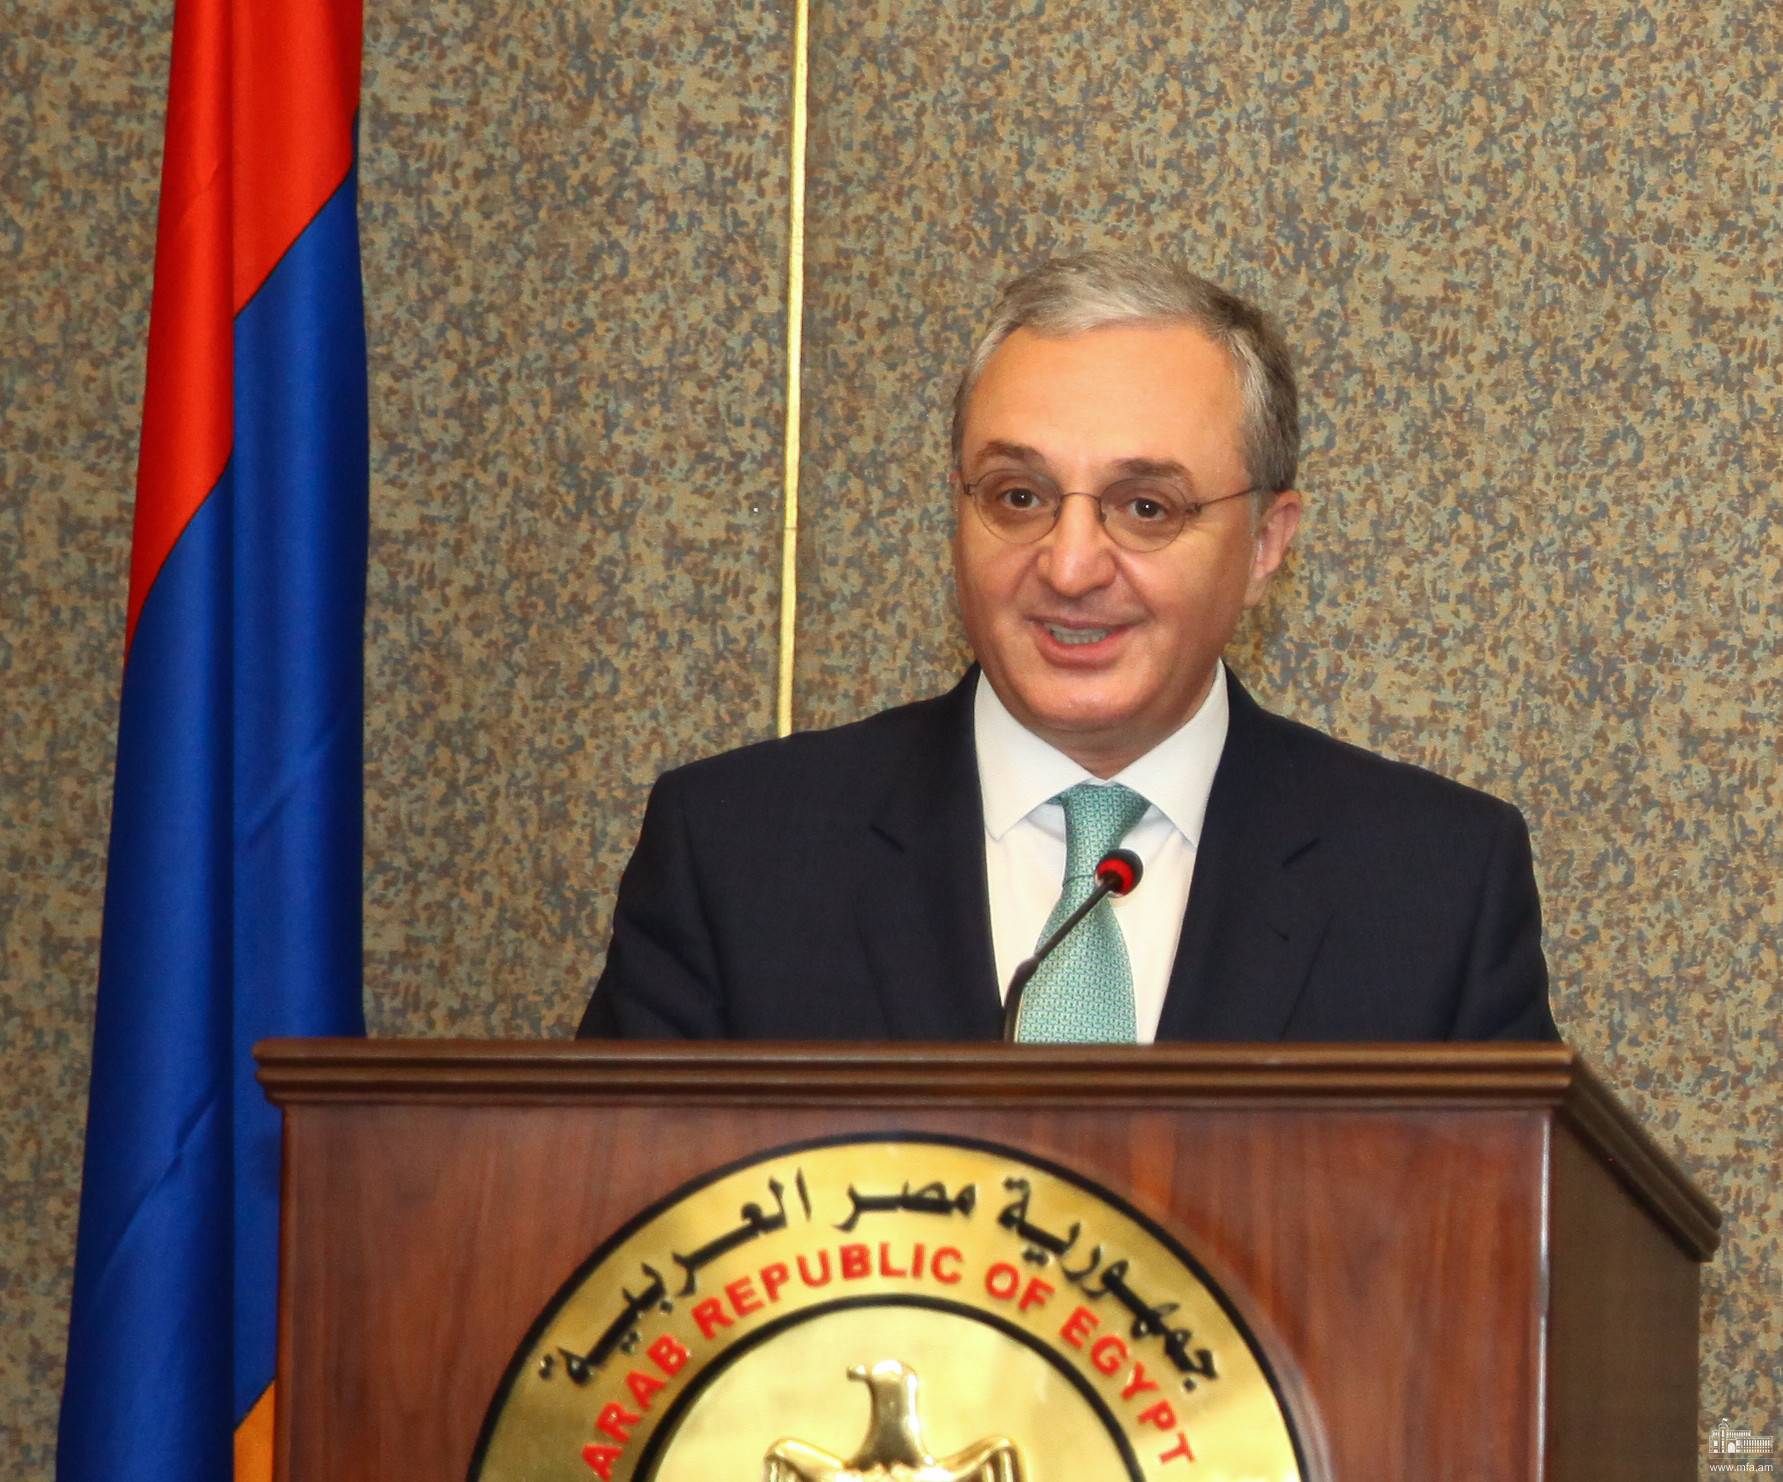 Армения поддерживает Египет, солидарна с Египтом: Зограб Мнацаканян в Каире — видео